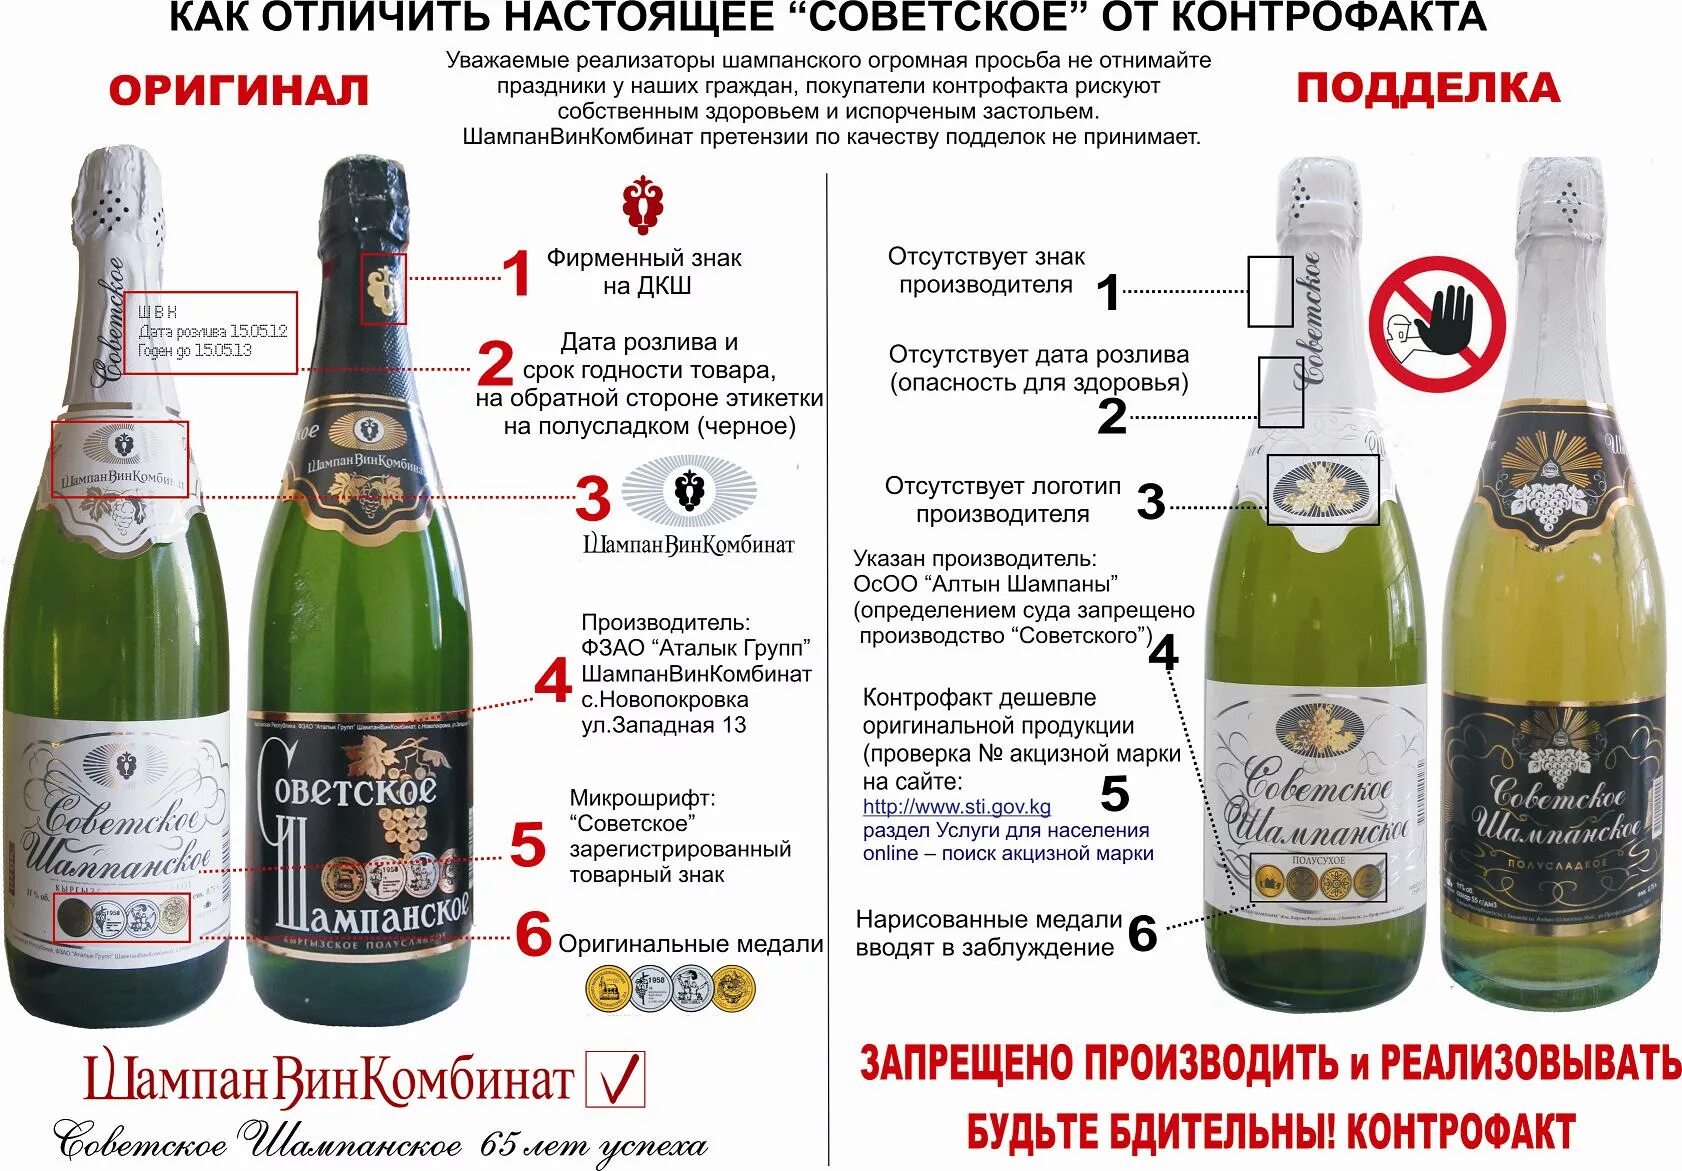 Советское шампанское. Шампанское маркировка. Советское шампанское производитель. Российское шампанское. Вино раз в неделю